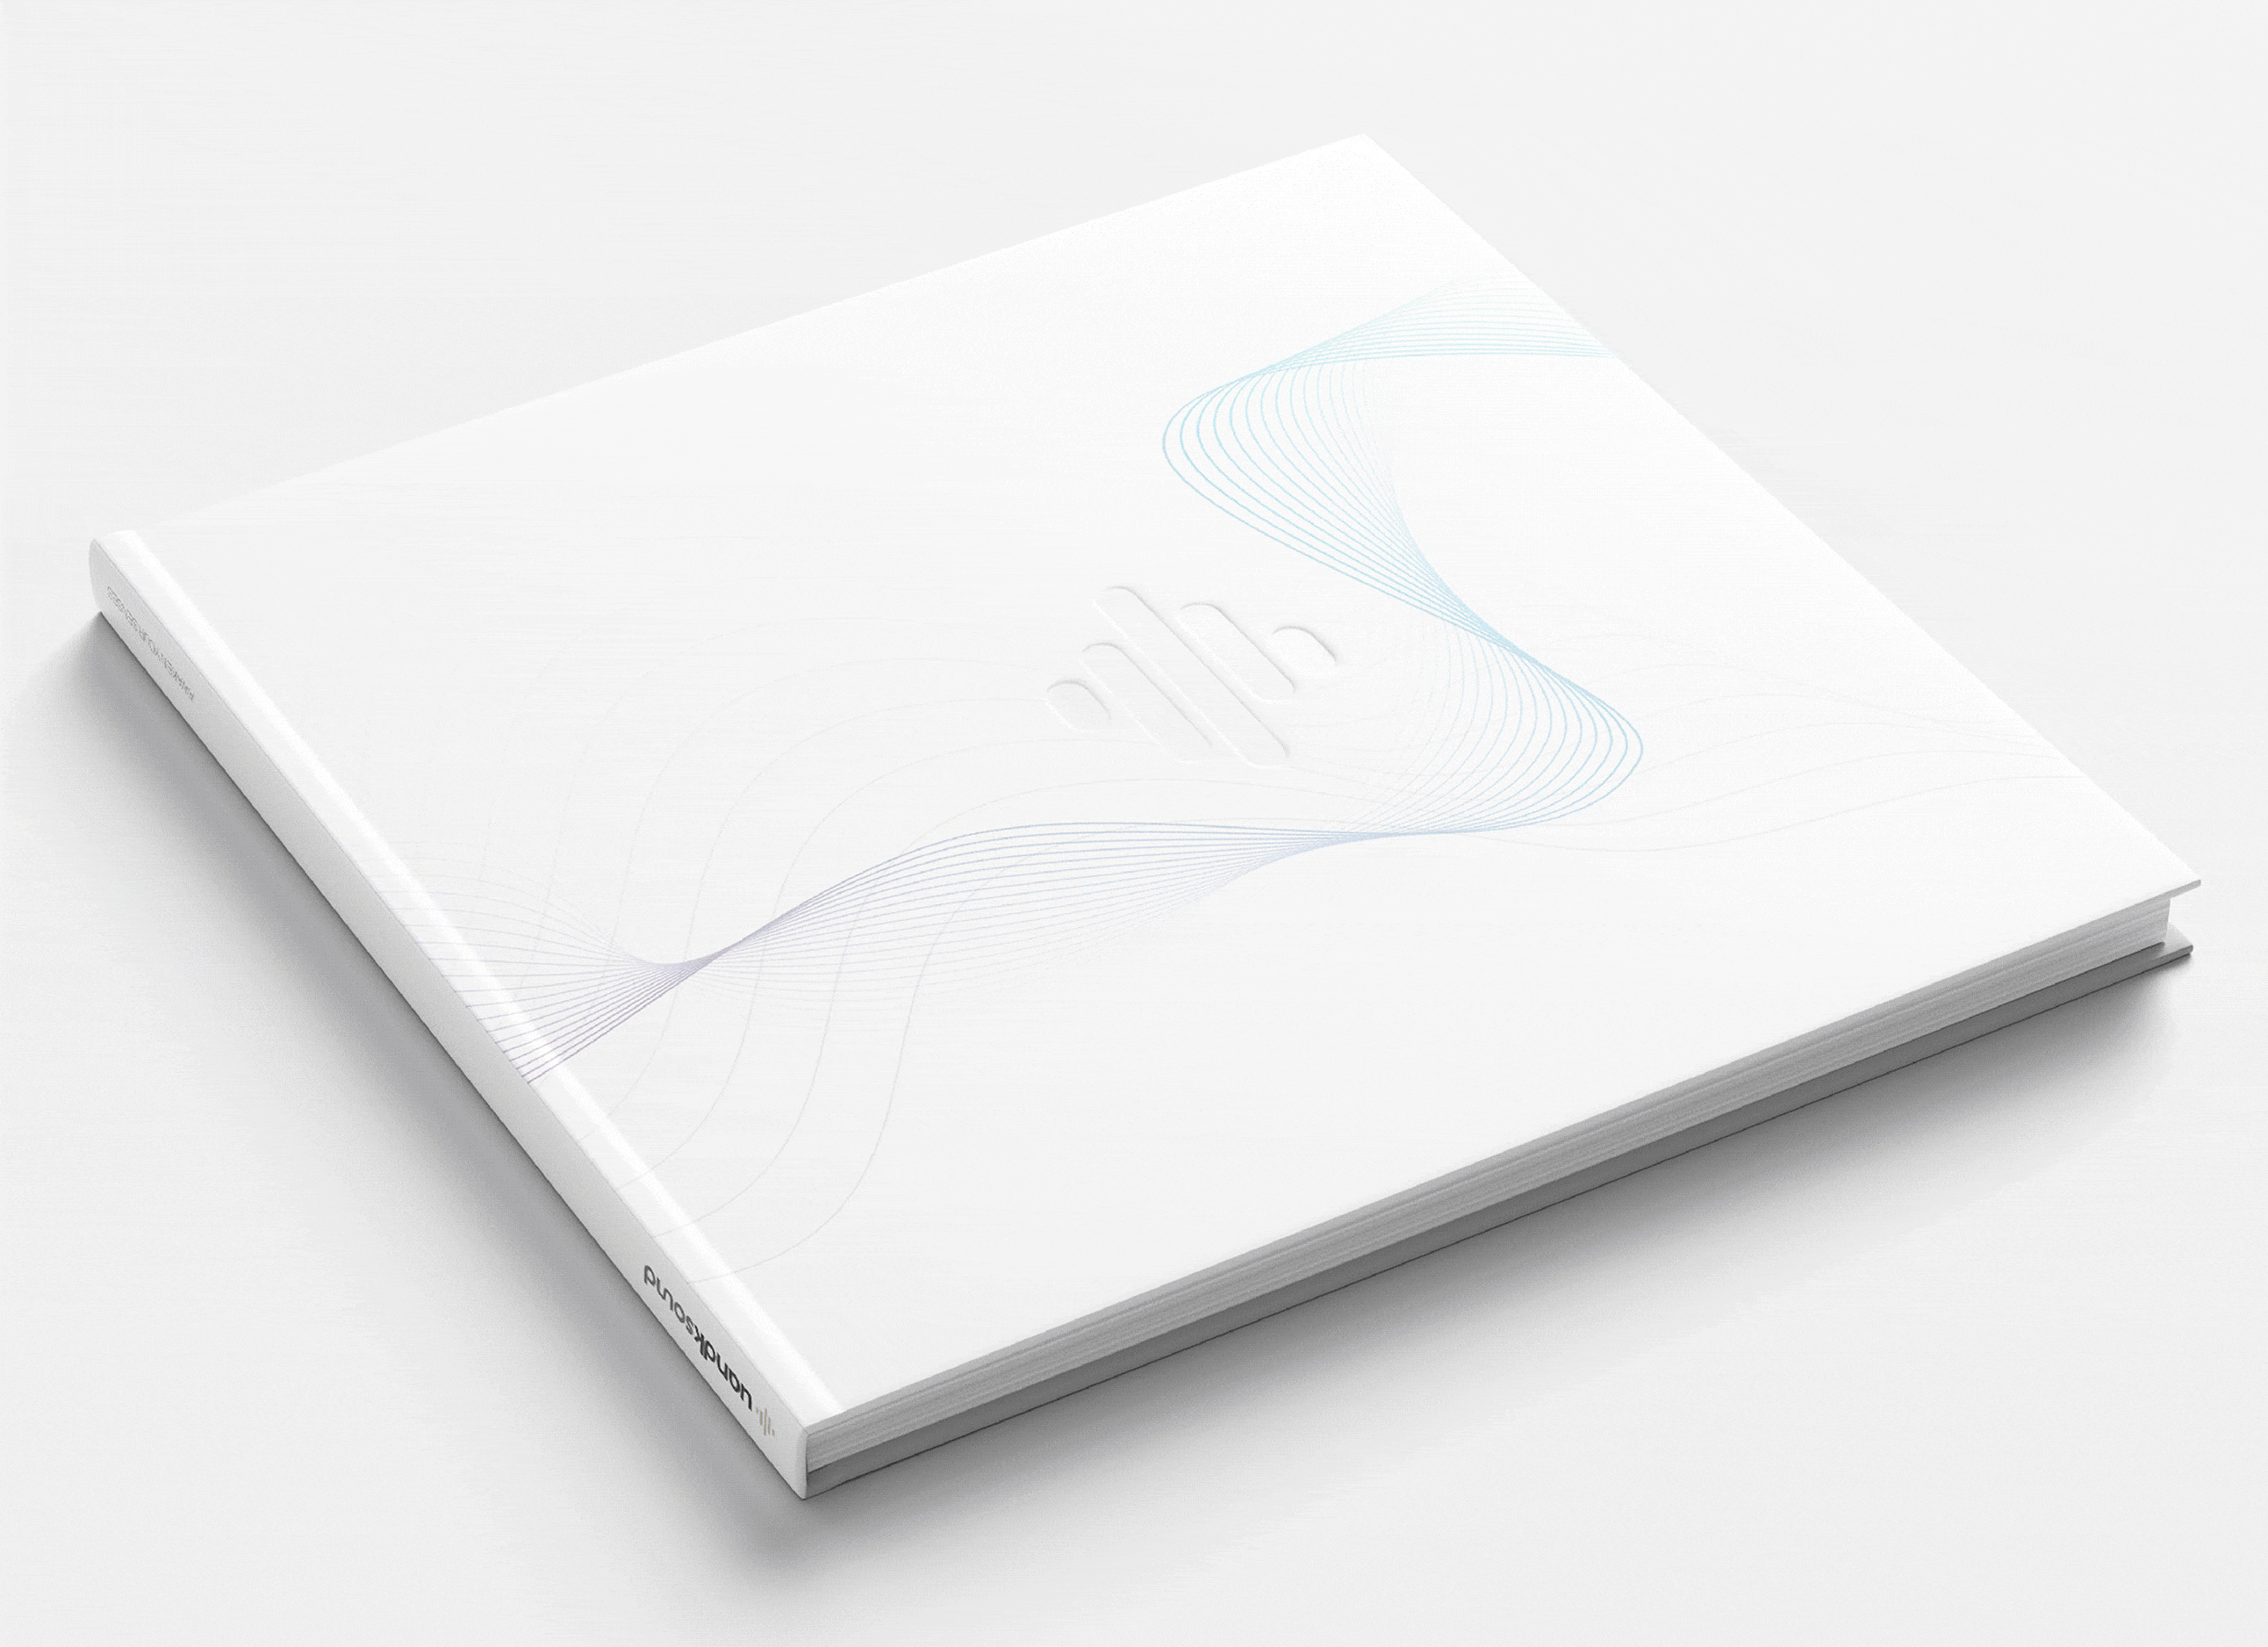 Diseño de catálogo corporativo y de producto para Uandksound 2021